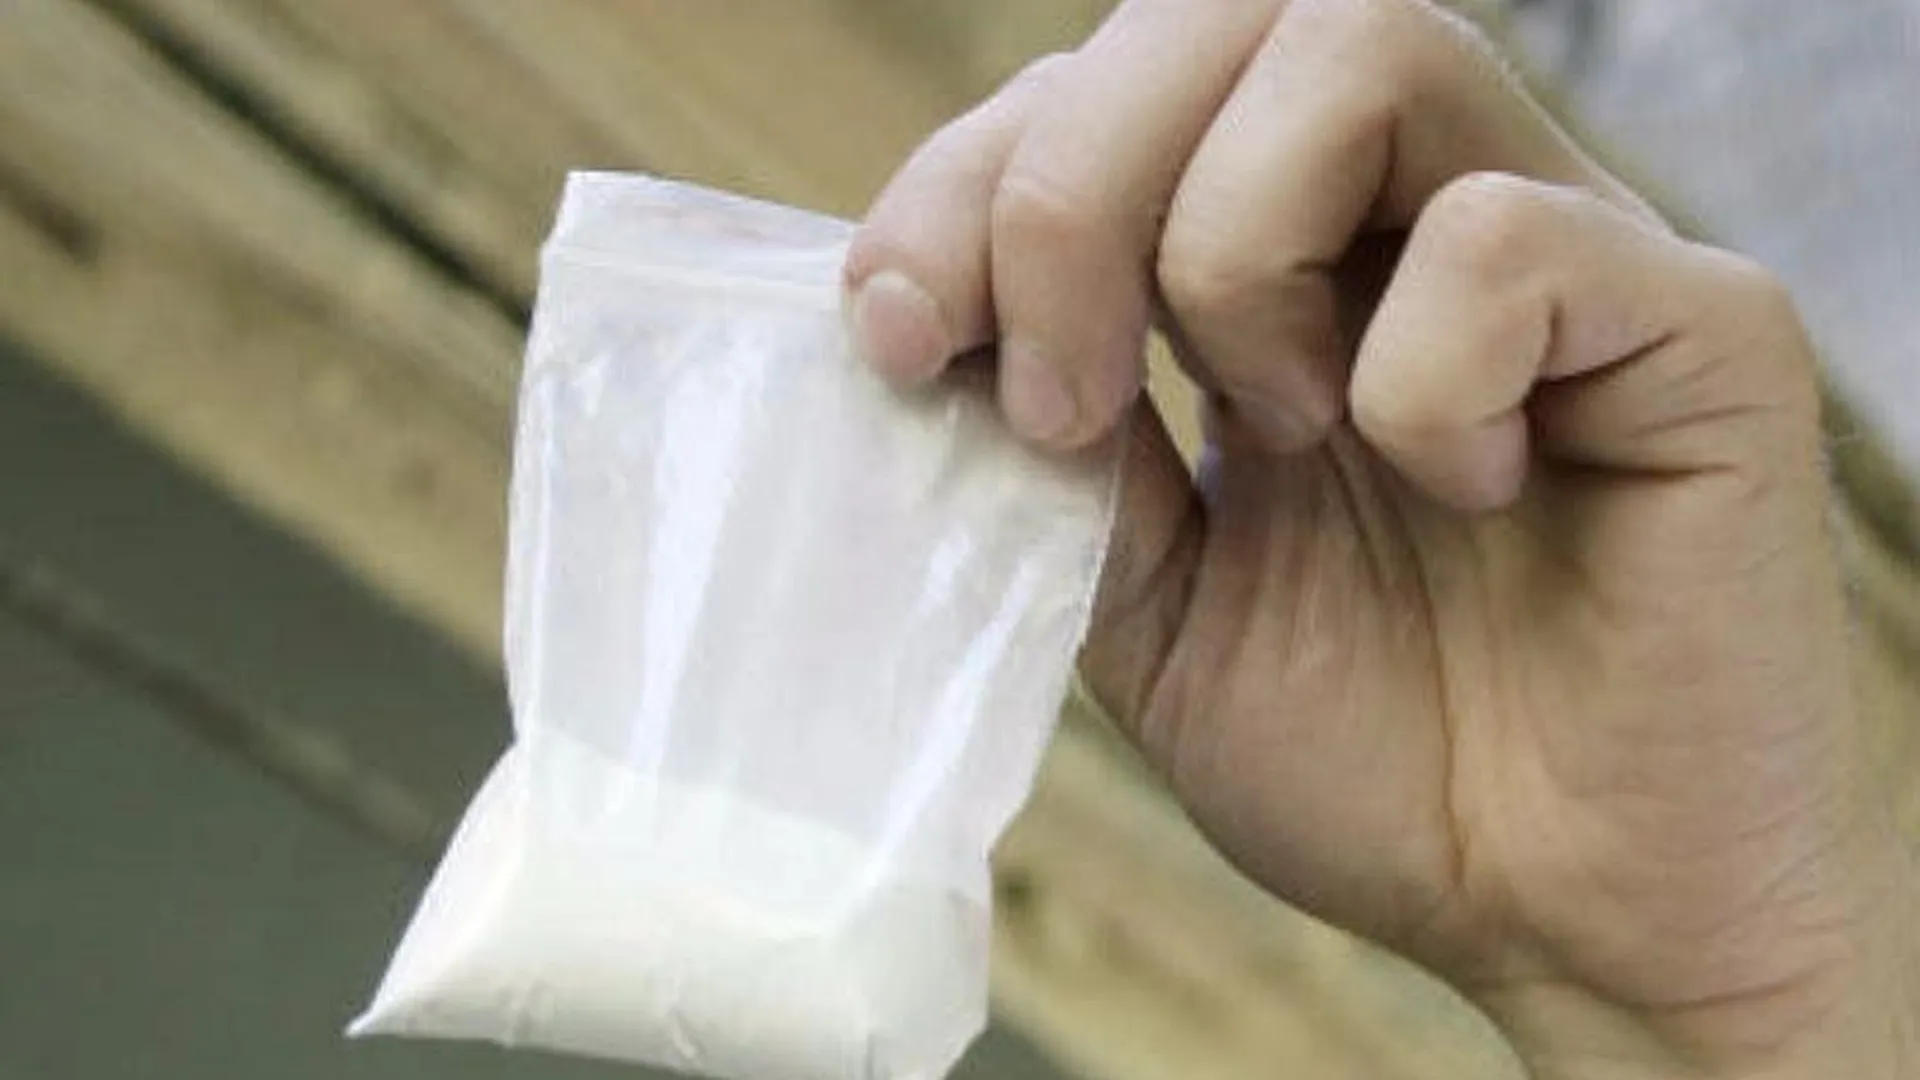 Полсотни граммов амфетамина нашли у мужчины в Орехово-Зуево